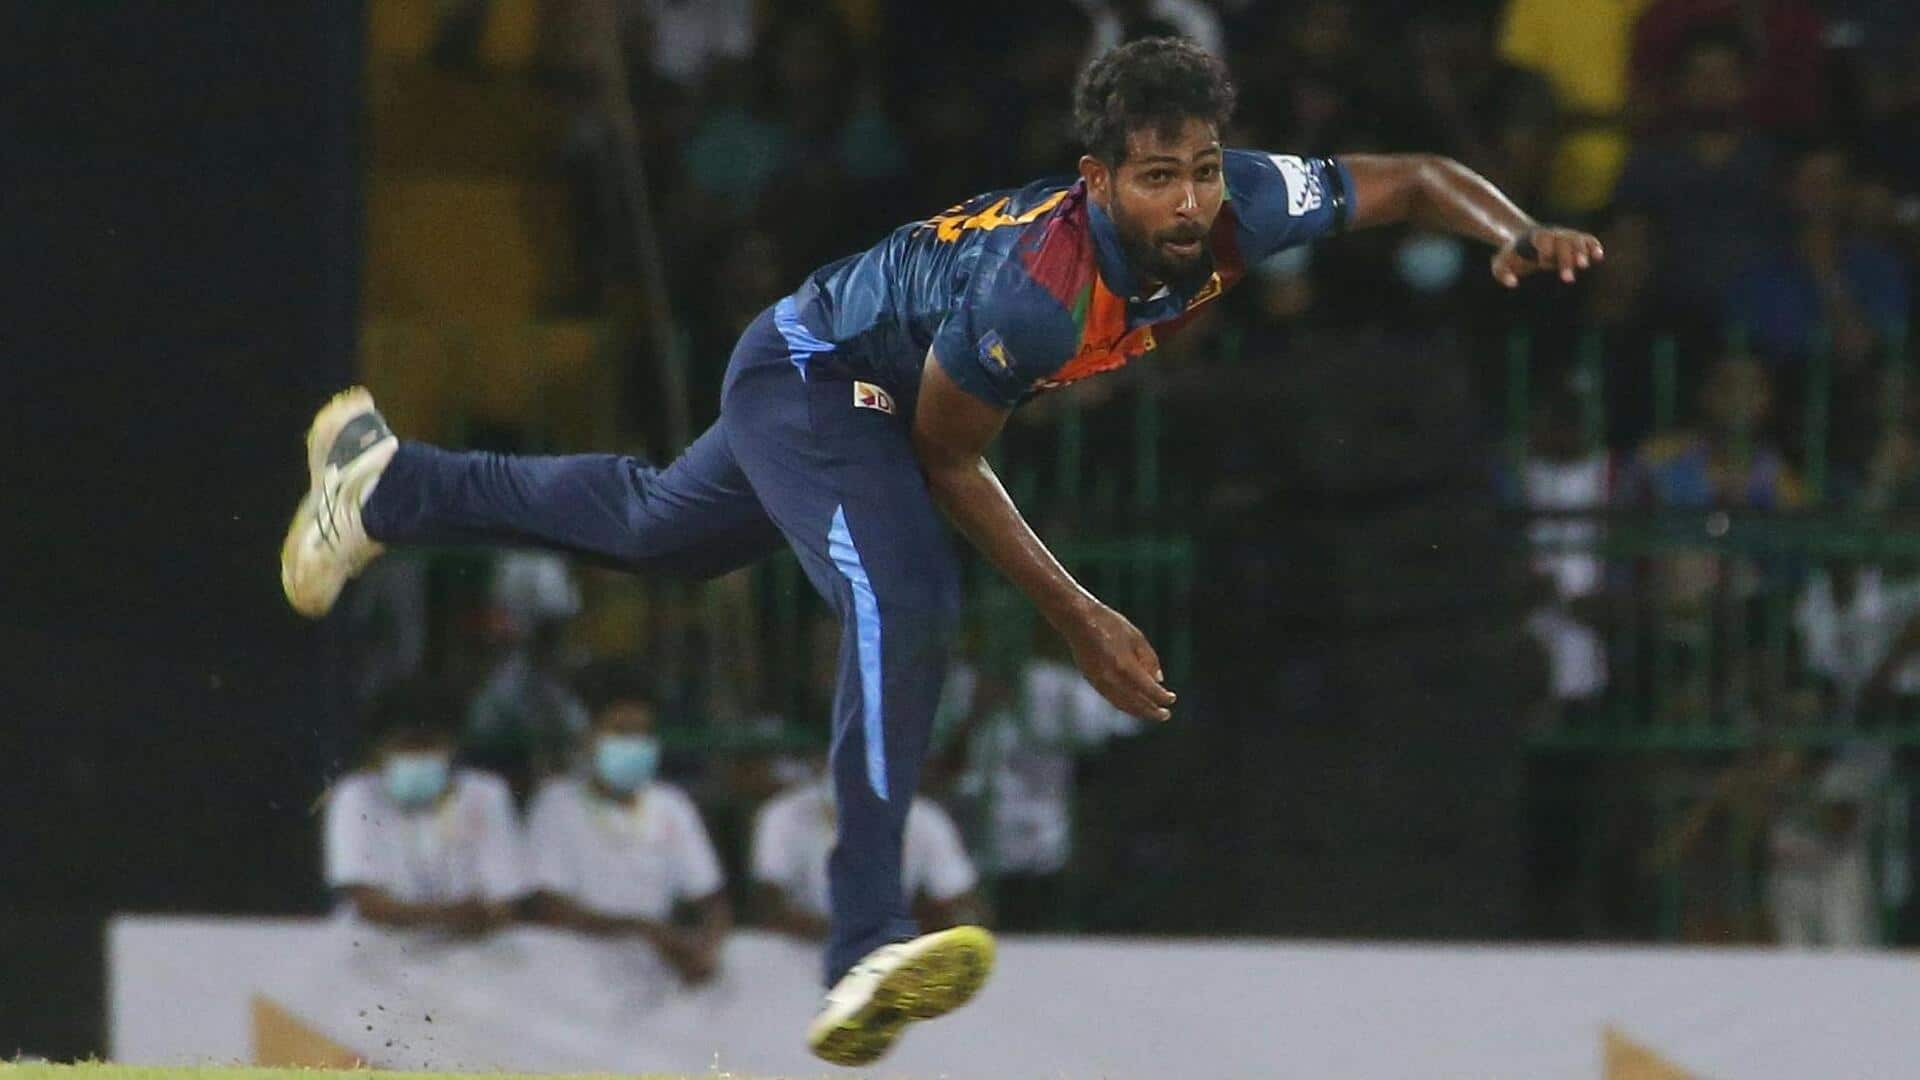 नुवान तुषारा ने बांग्लादेश के खिलाफ हैट्रिक सहित चटकाए 5 विकेट, इस सूची में हुए शामिल